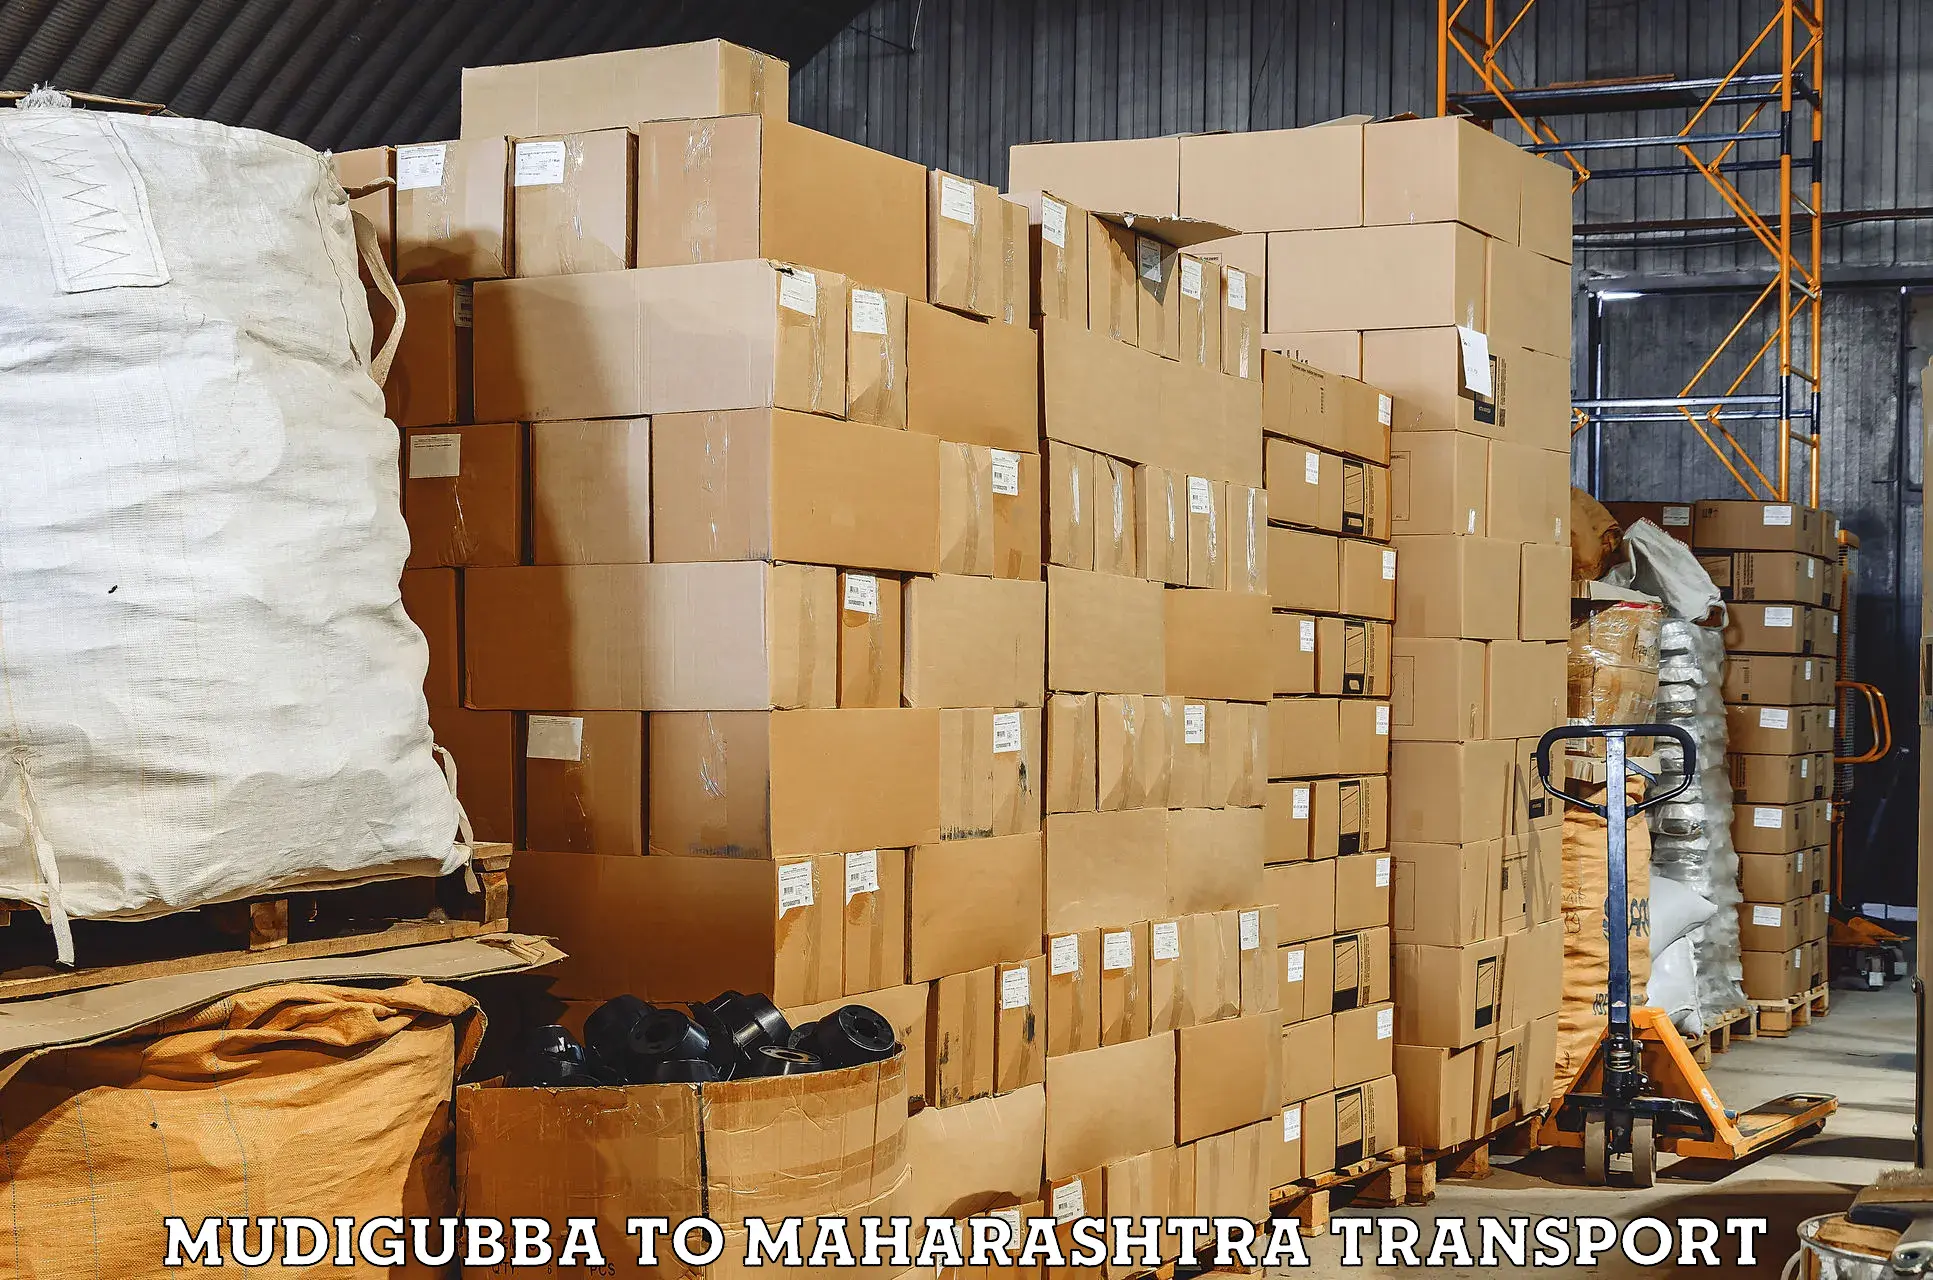 Online transport service Mudigubba to Alibag